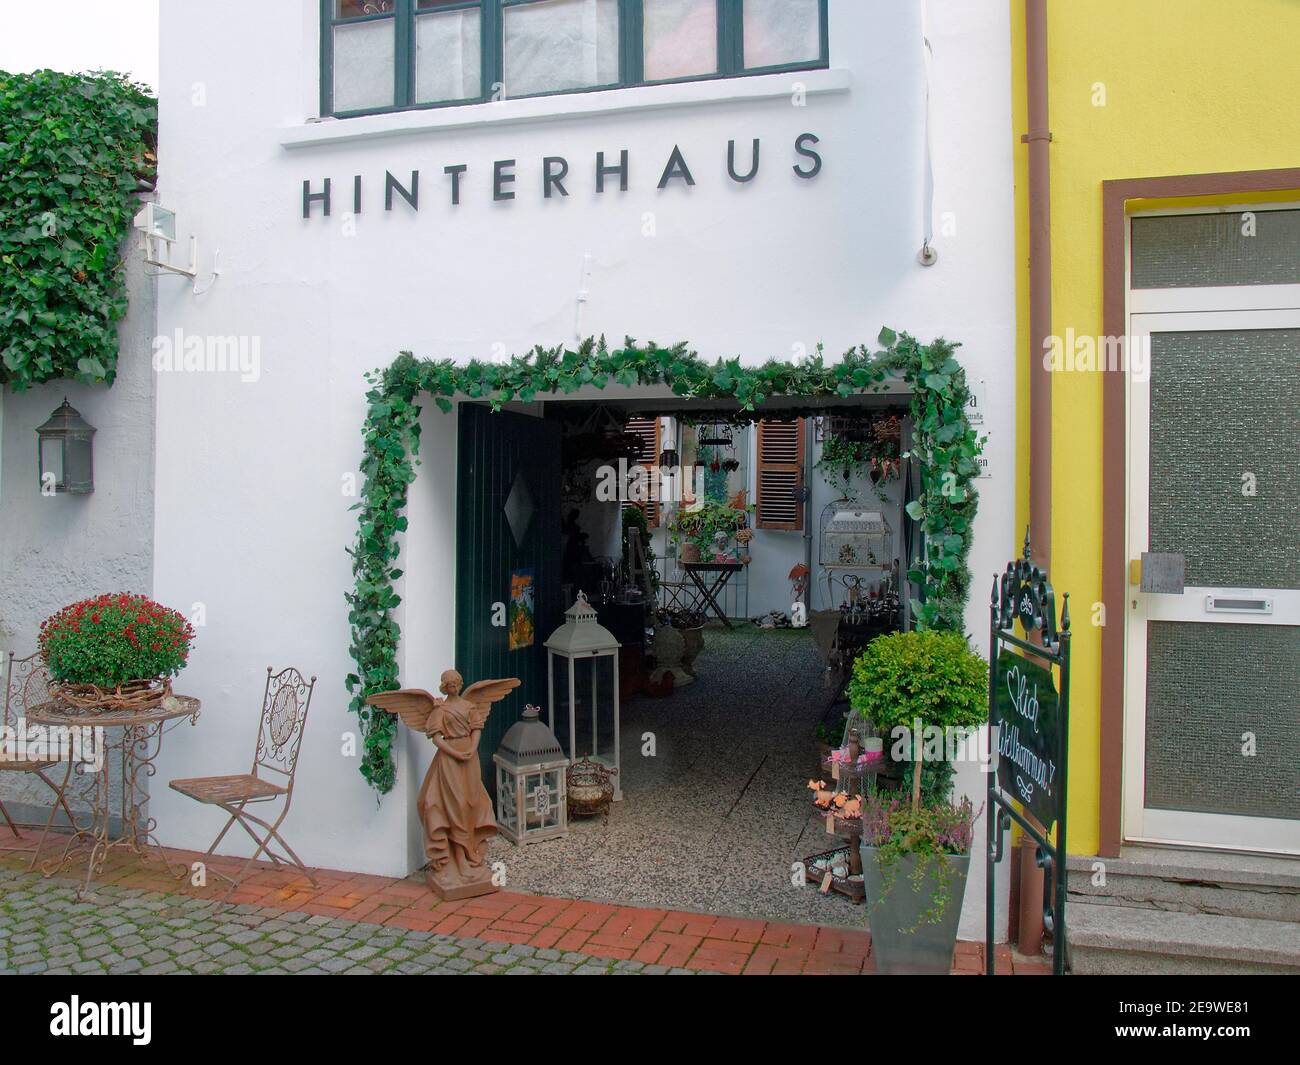 Junk-shop Hinterhaus on Fieselstraße in Moers, Nordrhein-Westfalen, Germany. Stock Photo